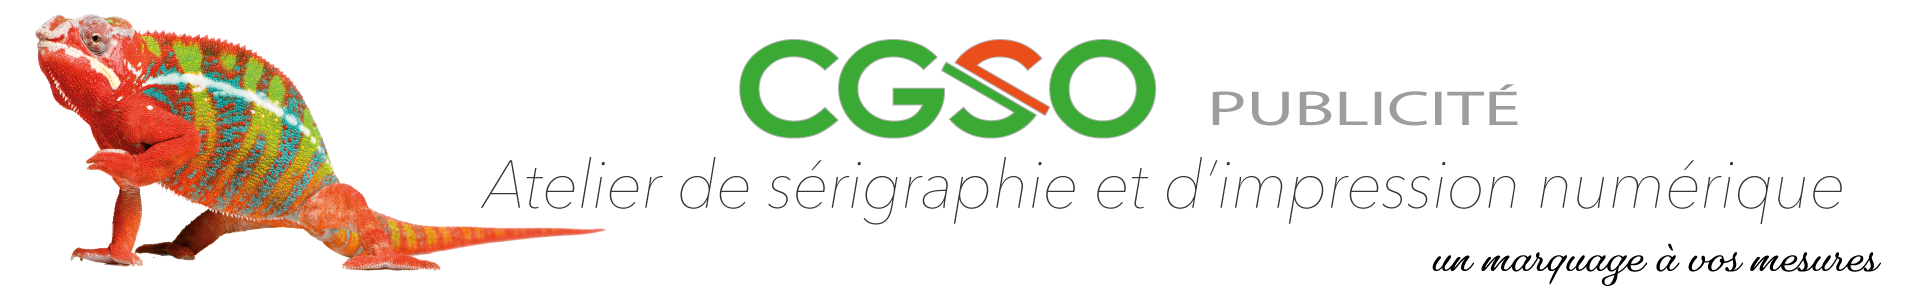 CGSO-Publicité_logo